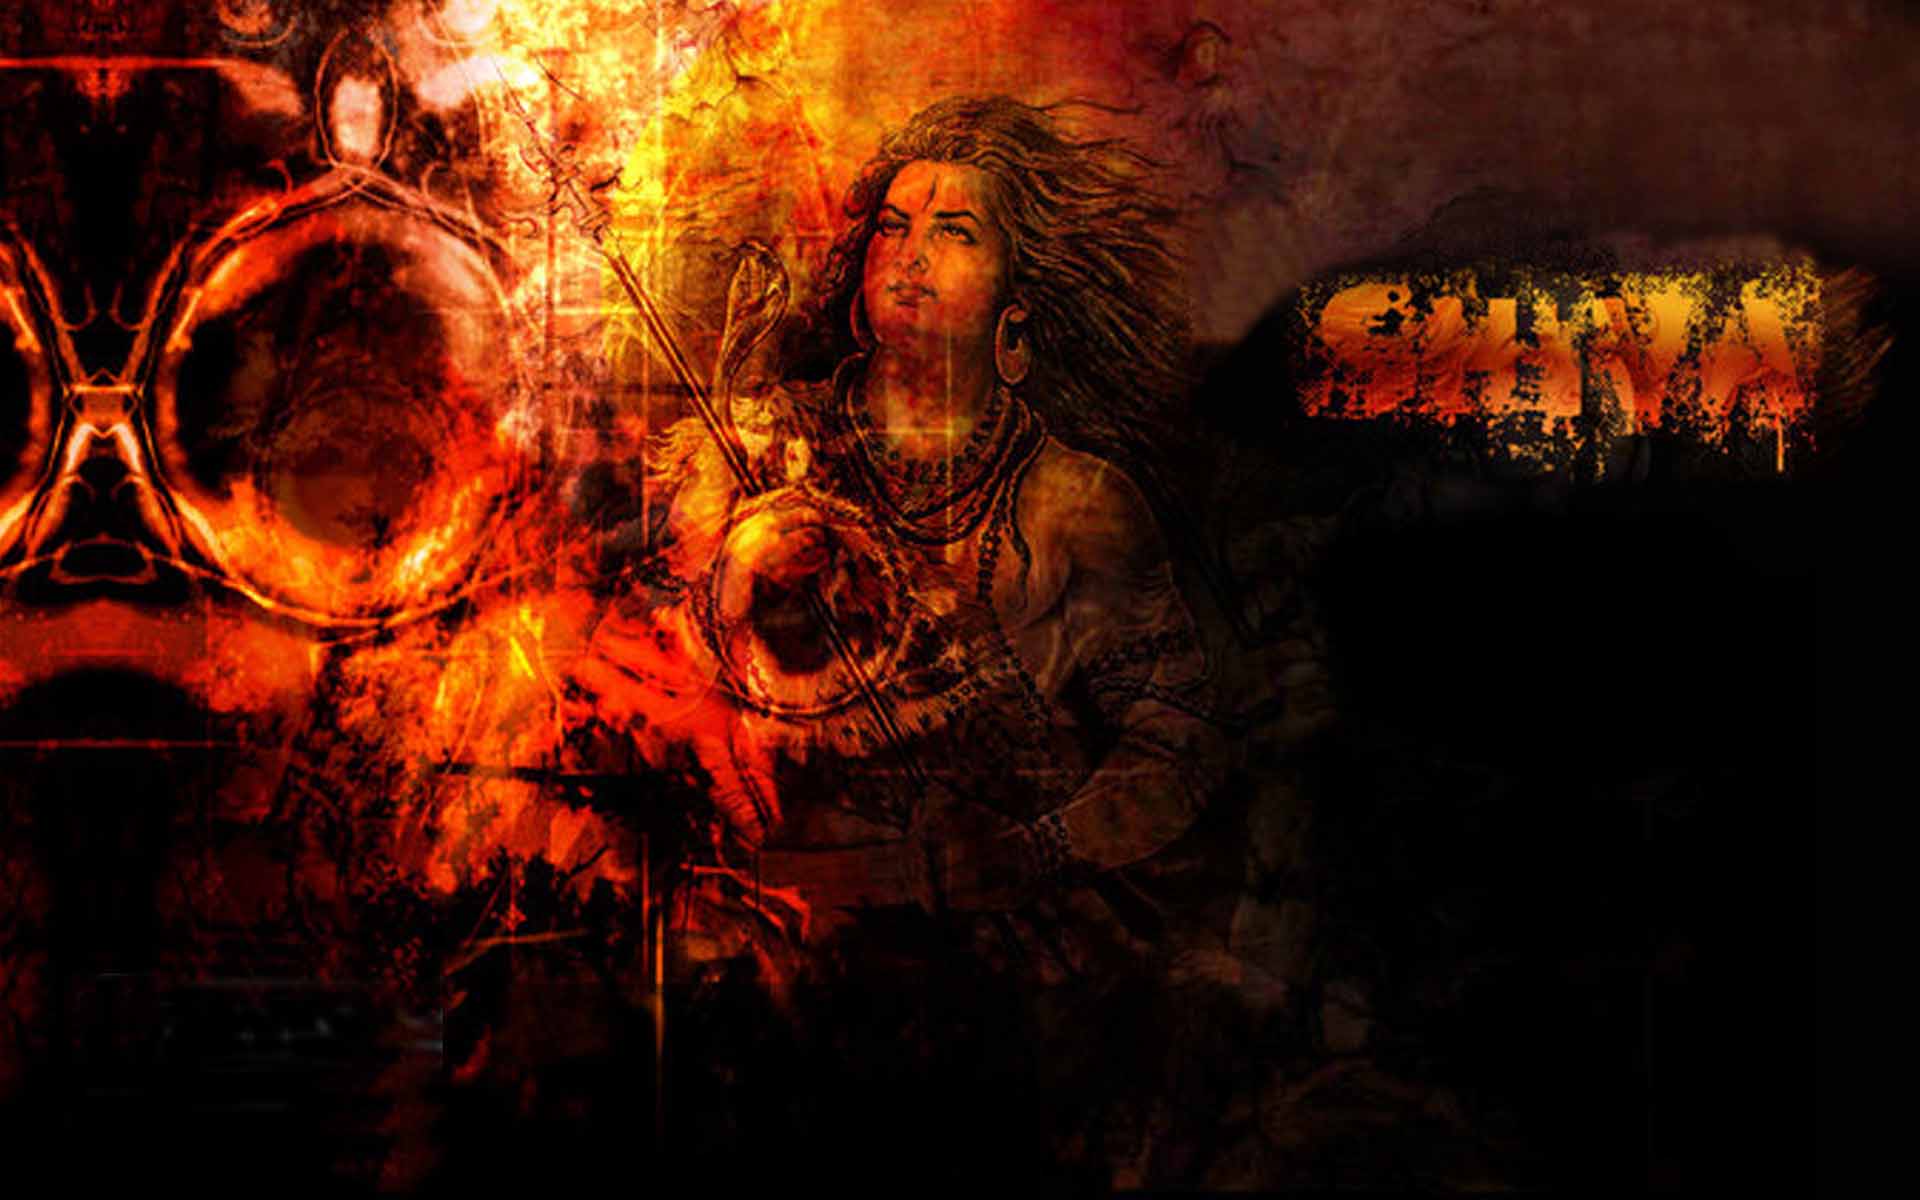 Shiva Animated Full Hd Image | Hindu Gods and Goddesses